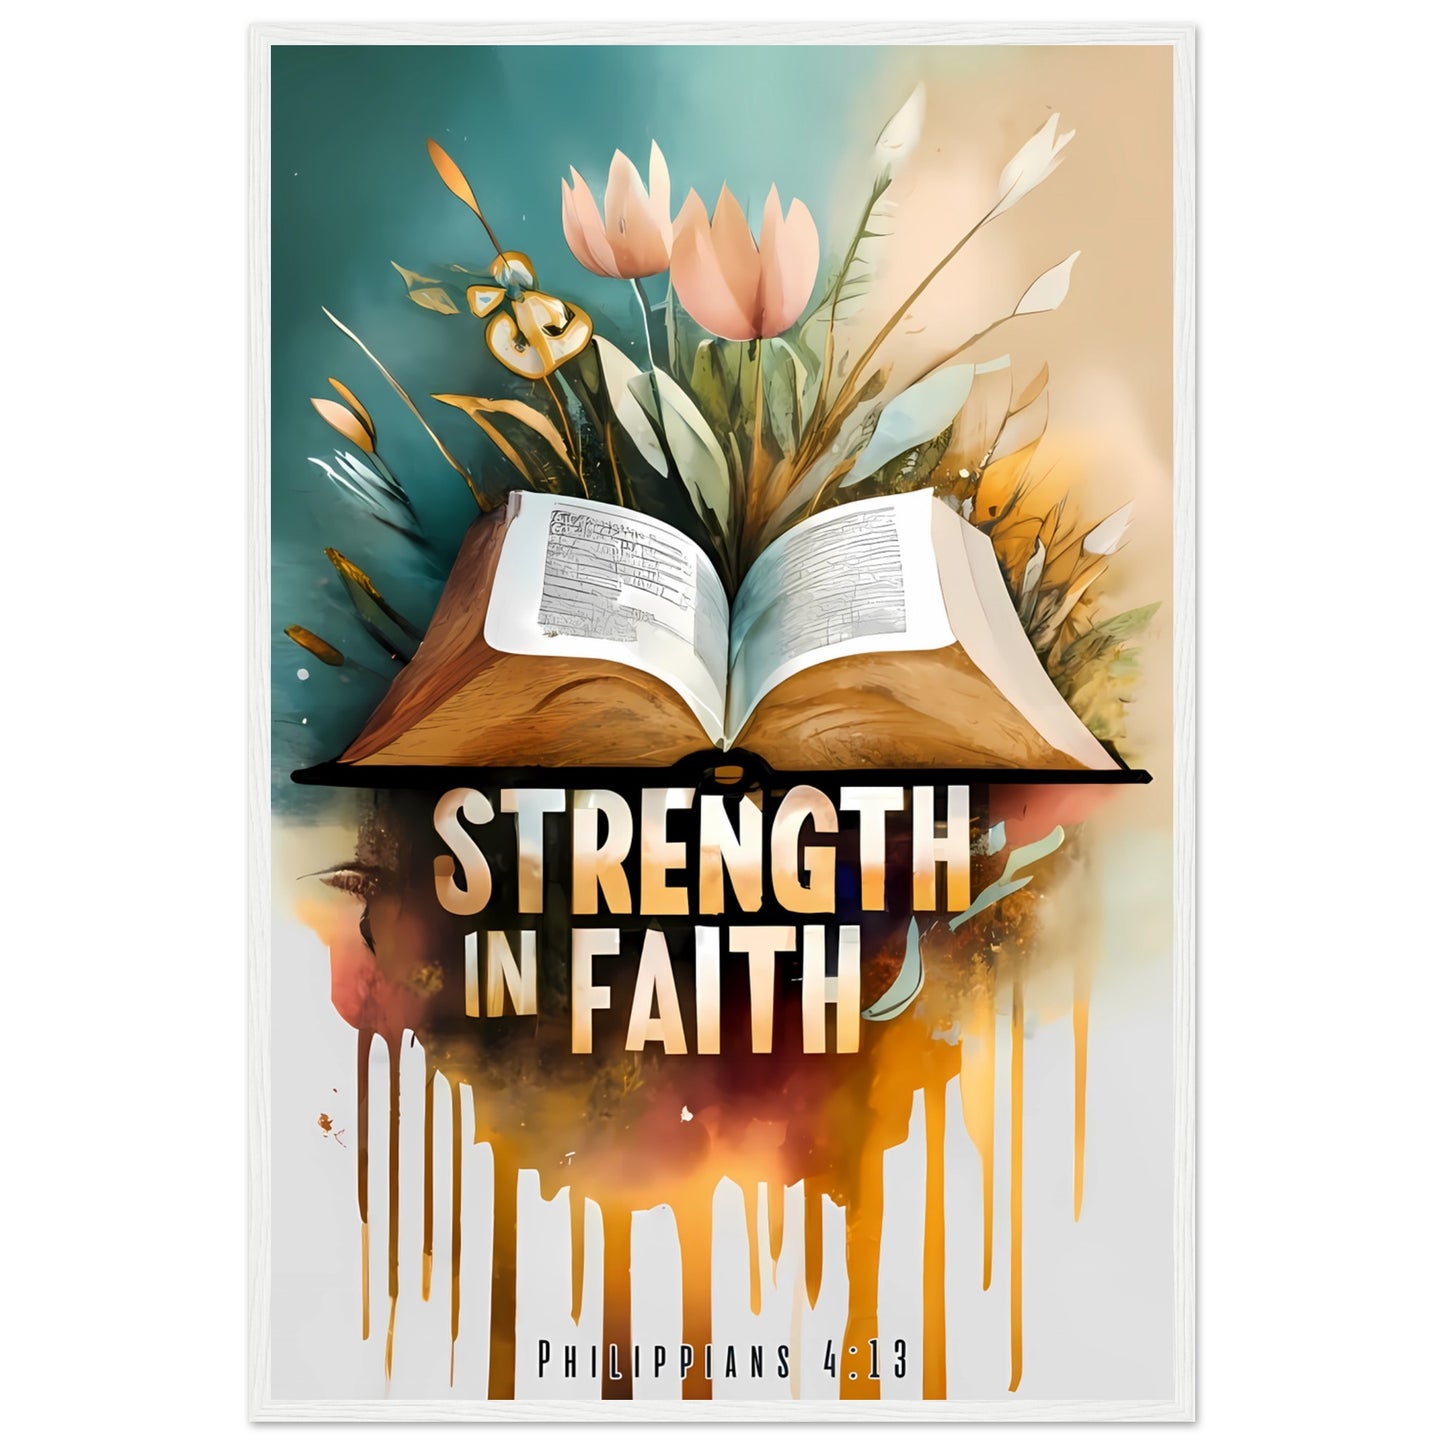 Strength in Faith Philippians 4:13 Framed Print